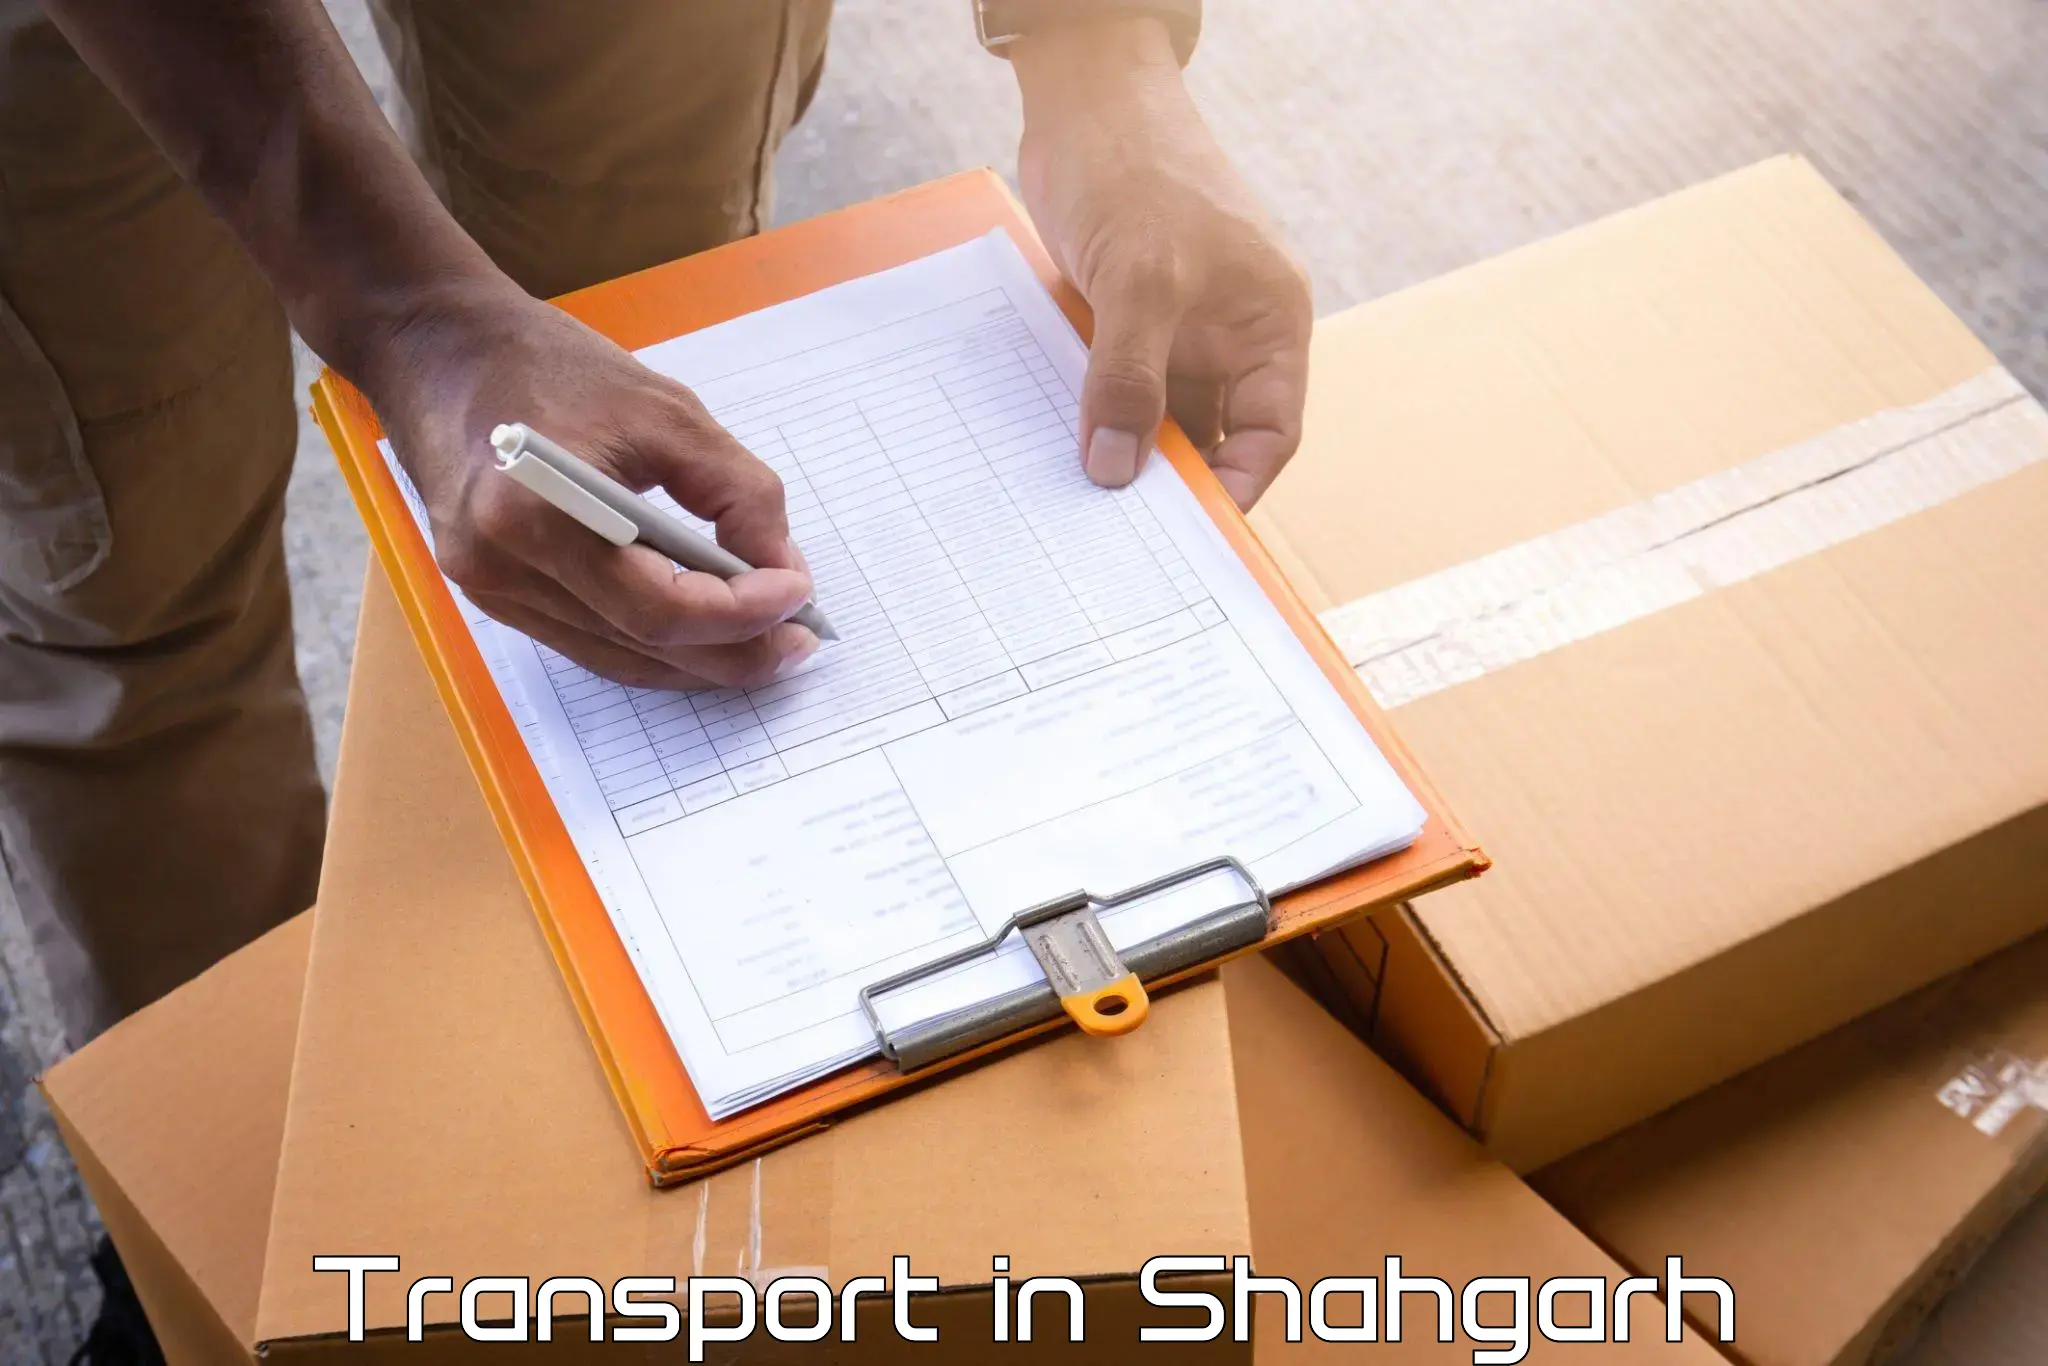 Furniture transport service in Shahgarh